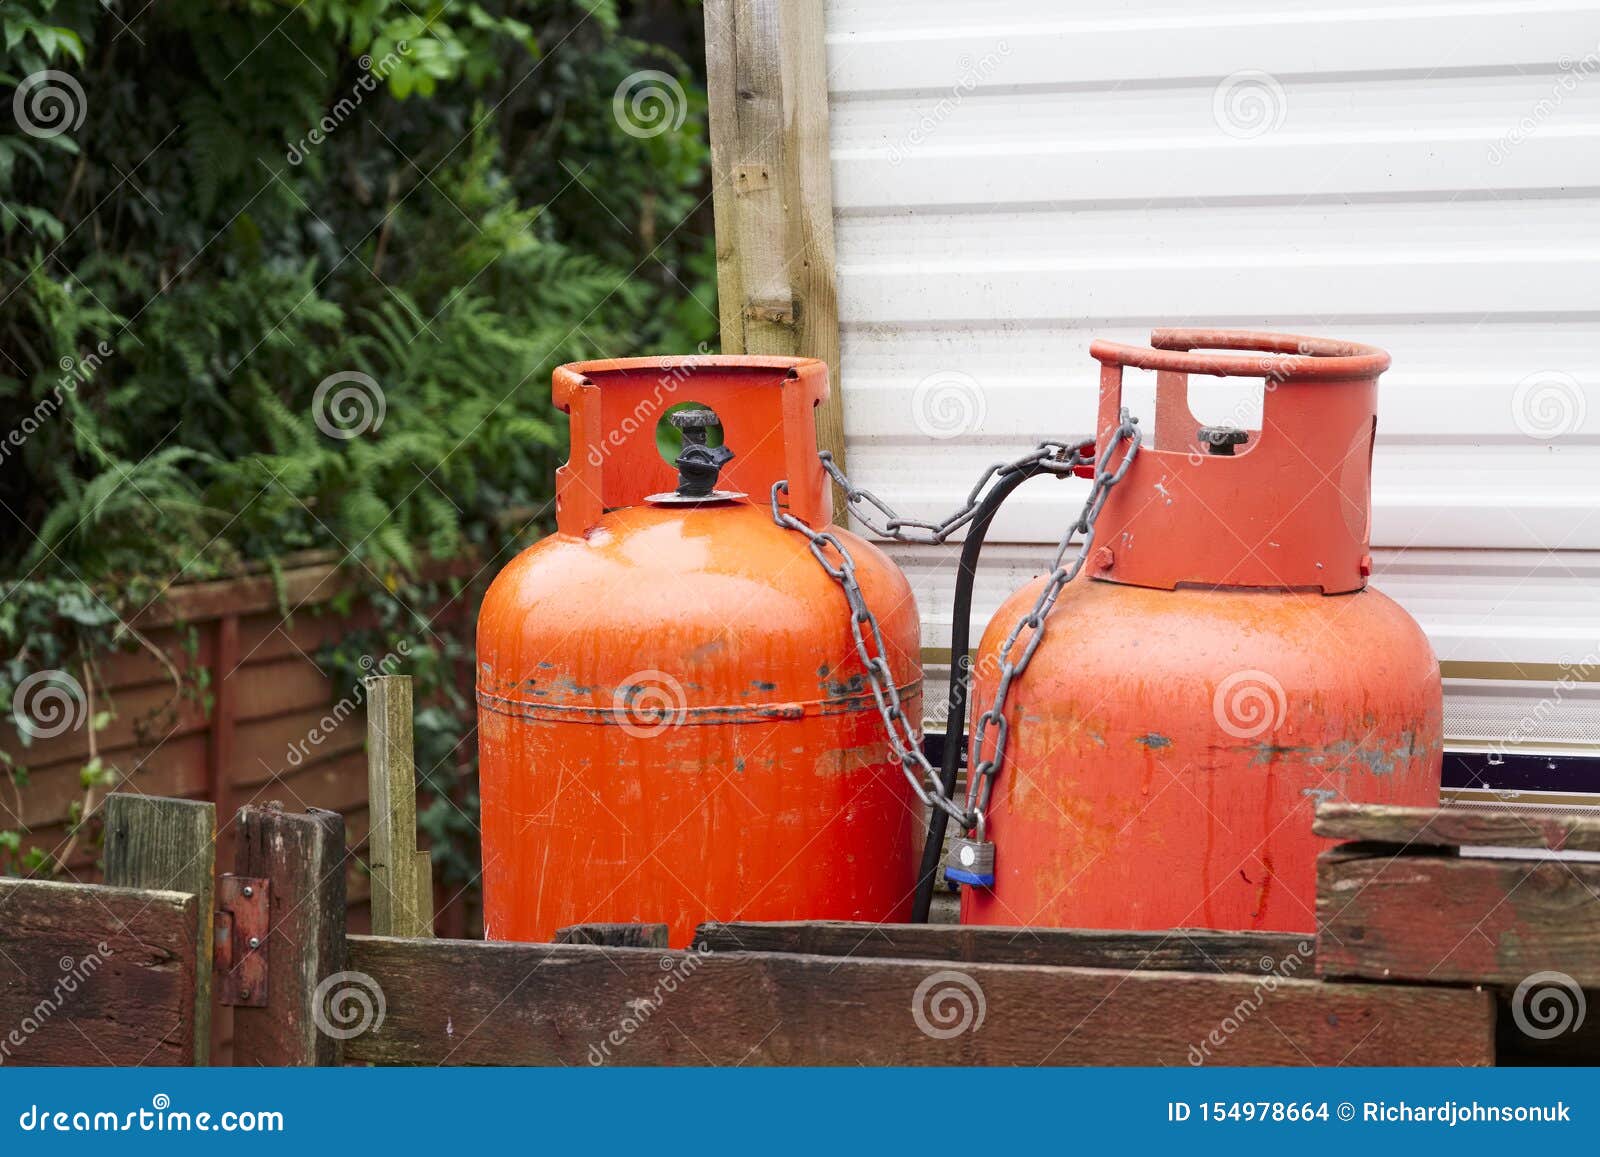 calor gas cylinder bottles at caravan park site in porthcawl uk